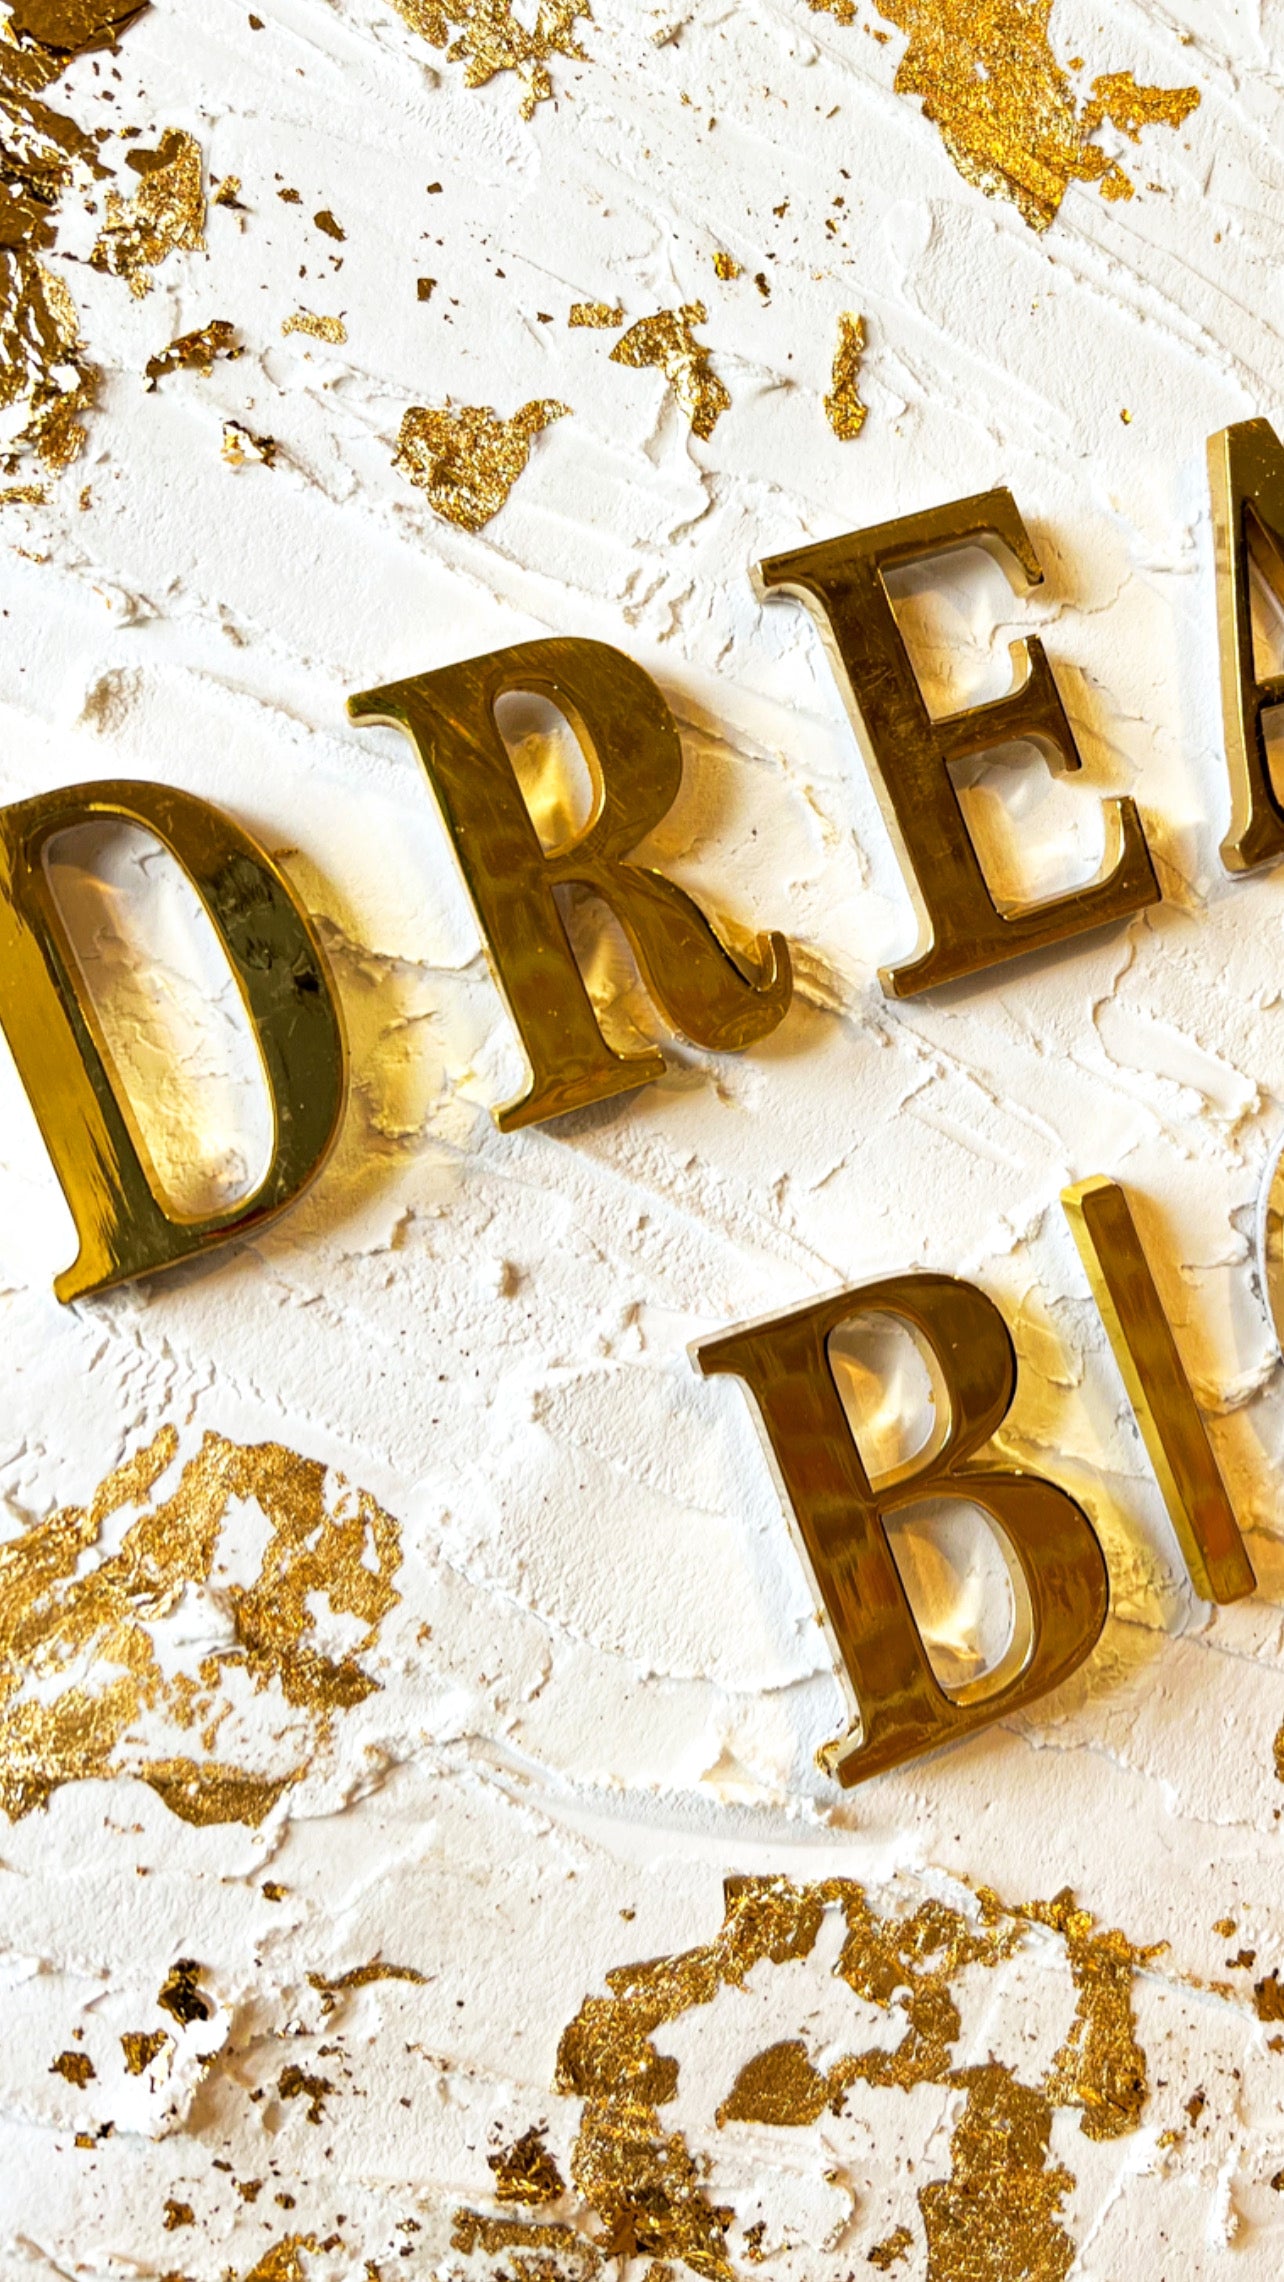 3D textured gold “Dream Big” Canvas